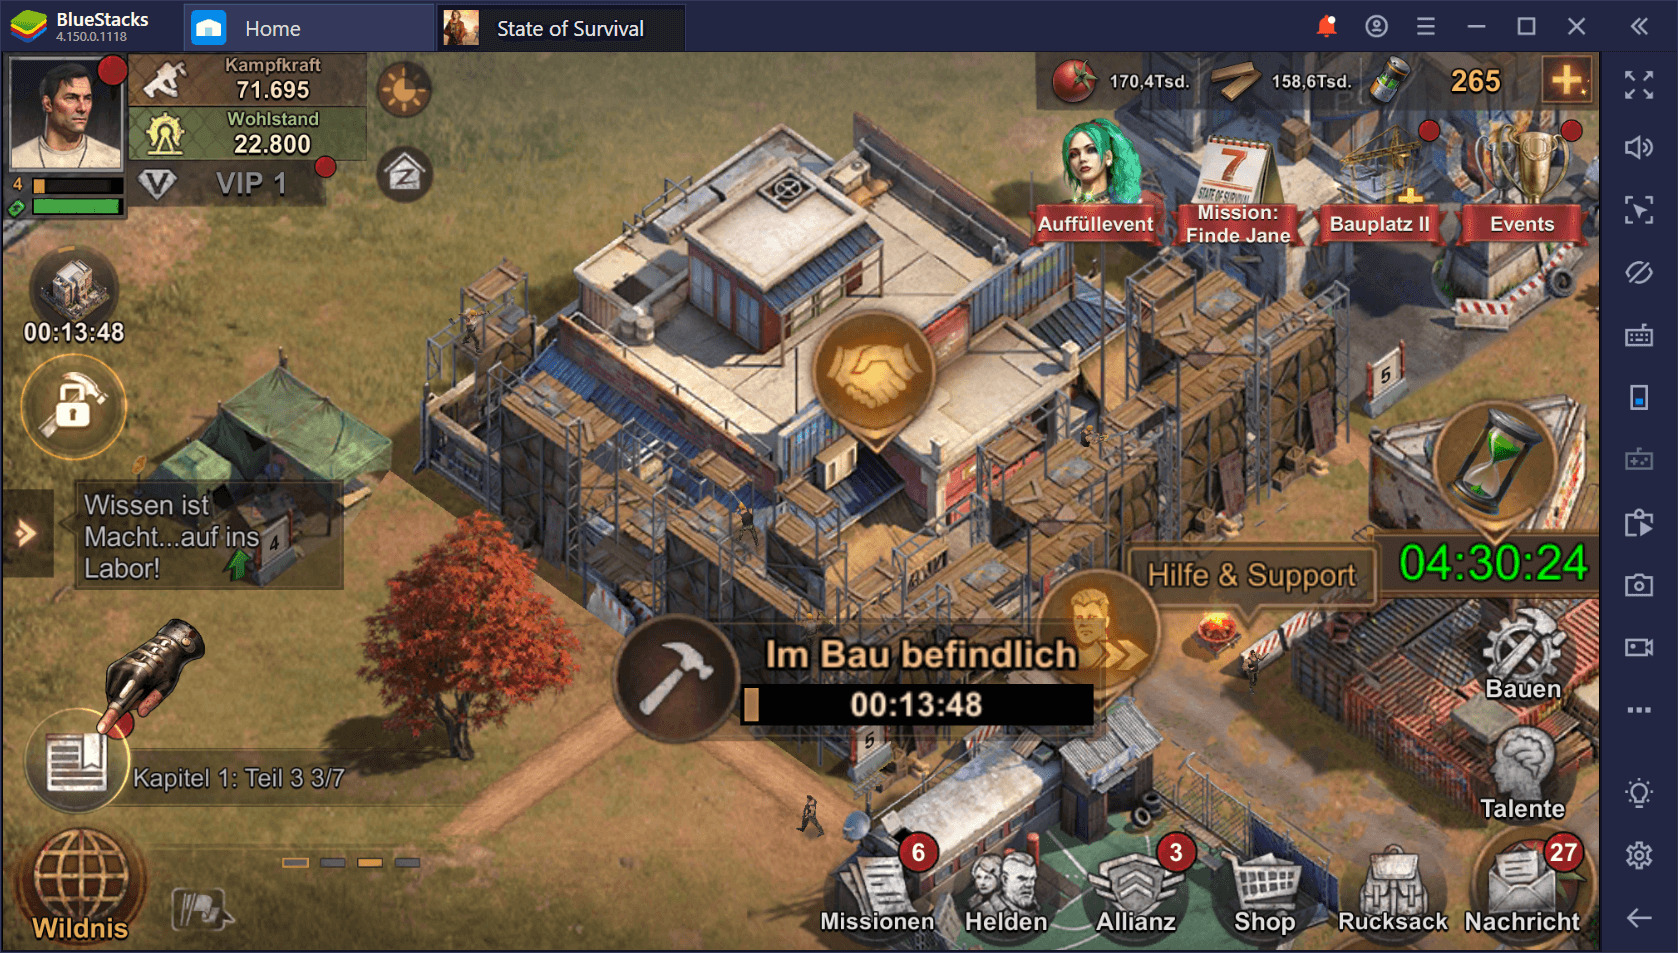 State of Survival auf dem PC: Bau eine Garnison, um der Zombie-Apokalypse standzuhalten